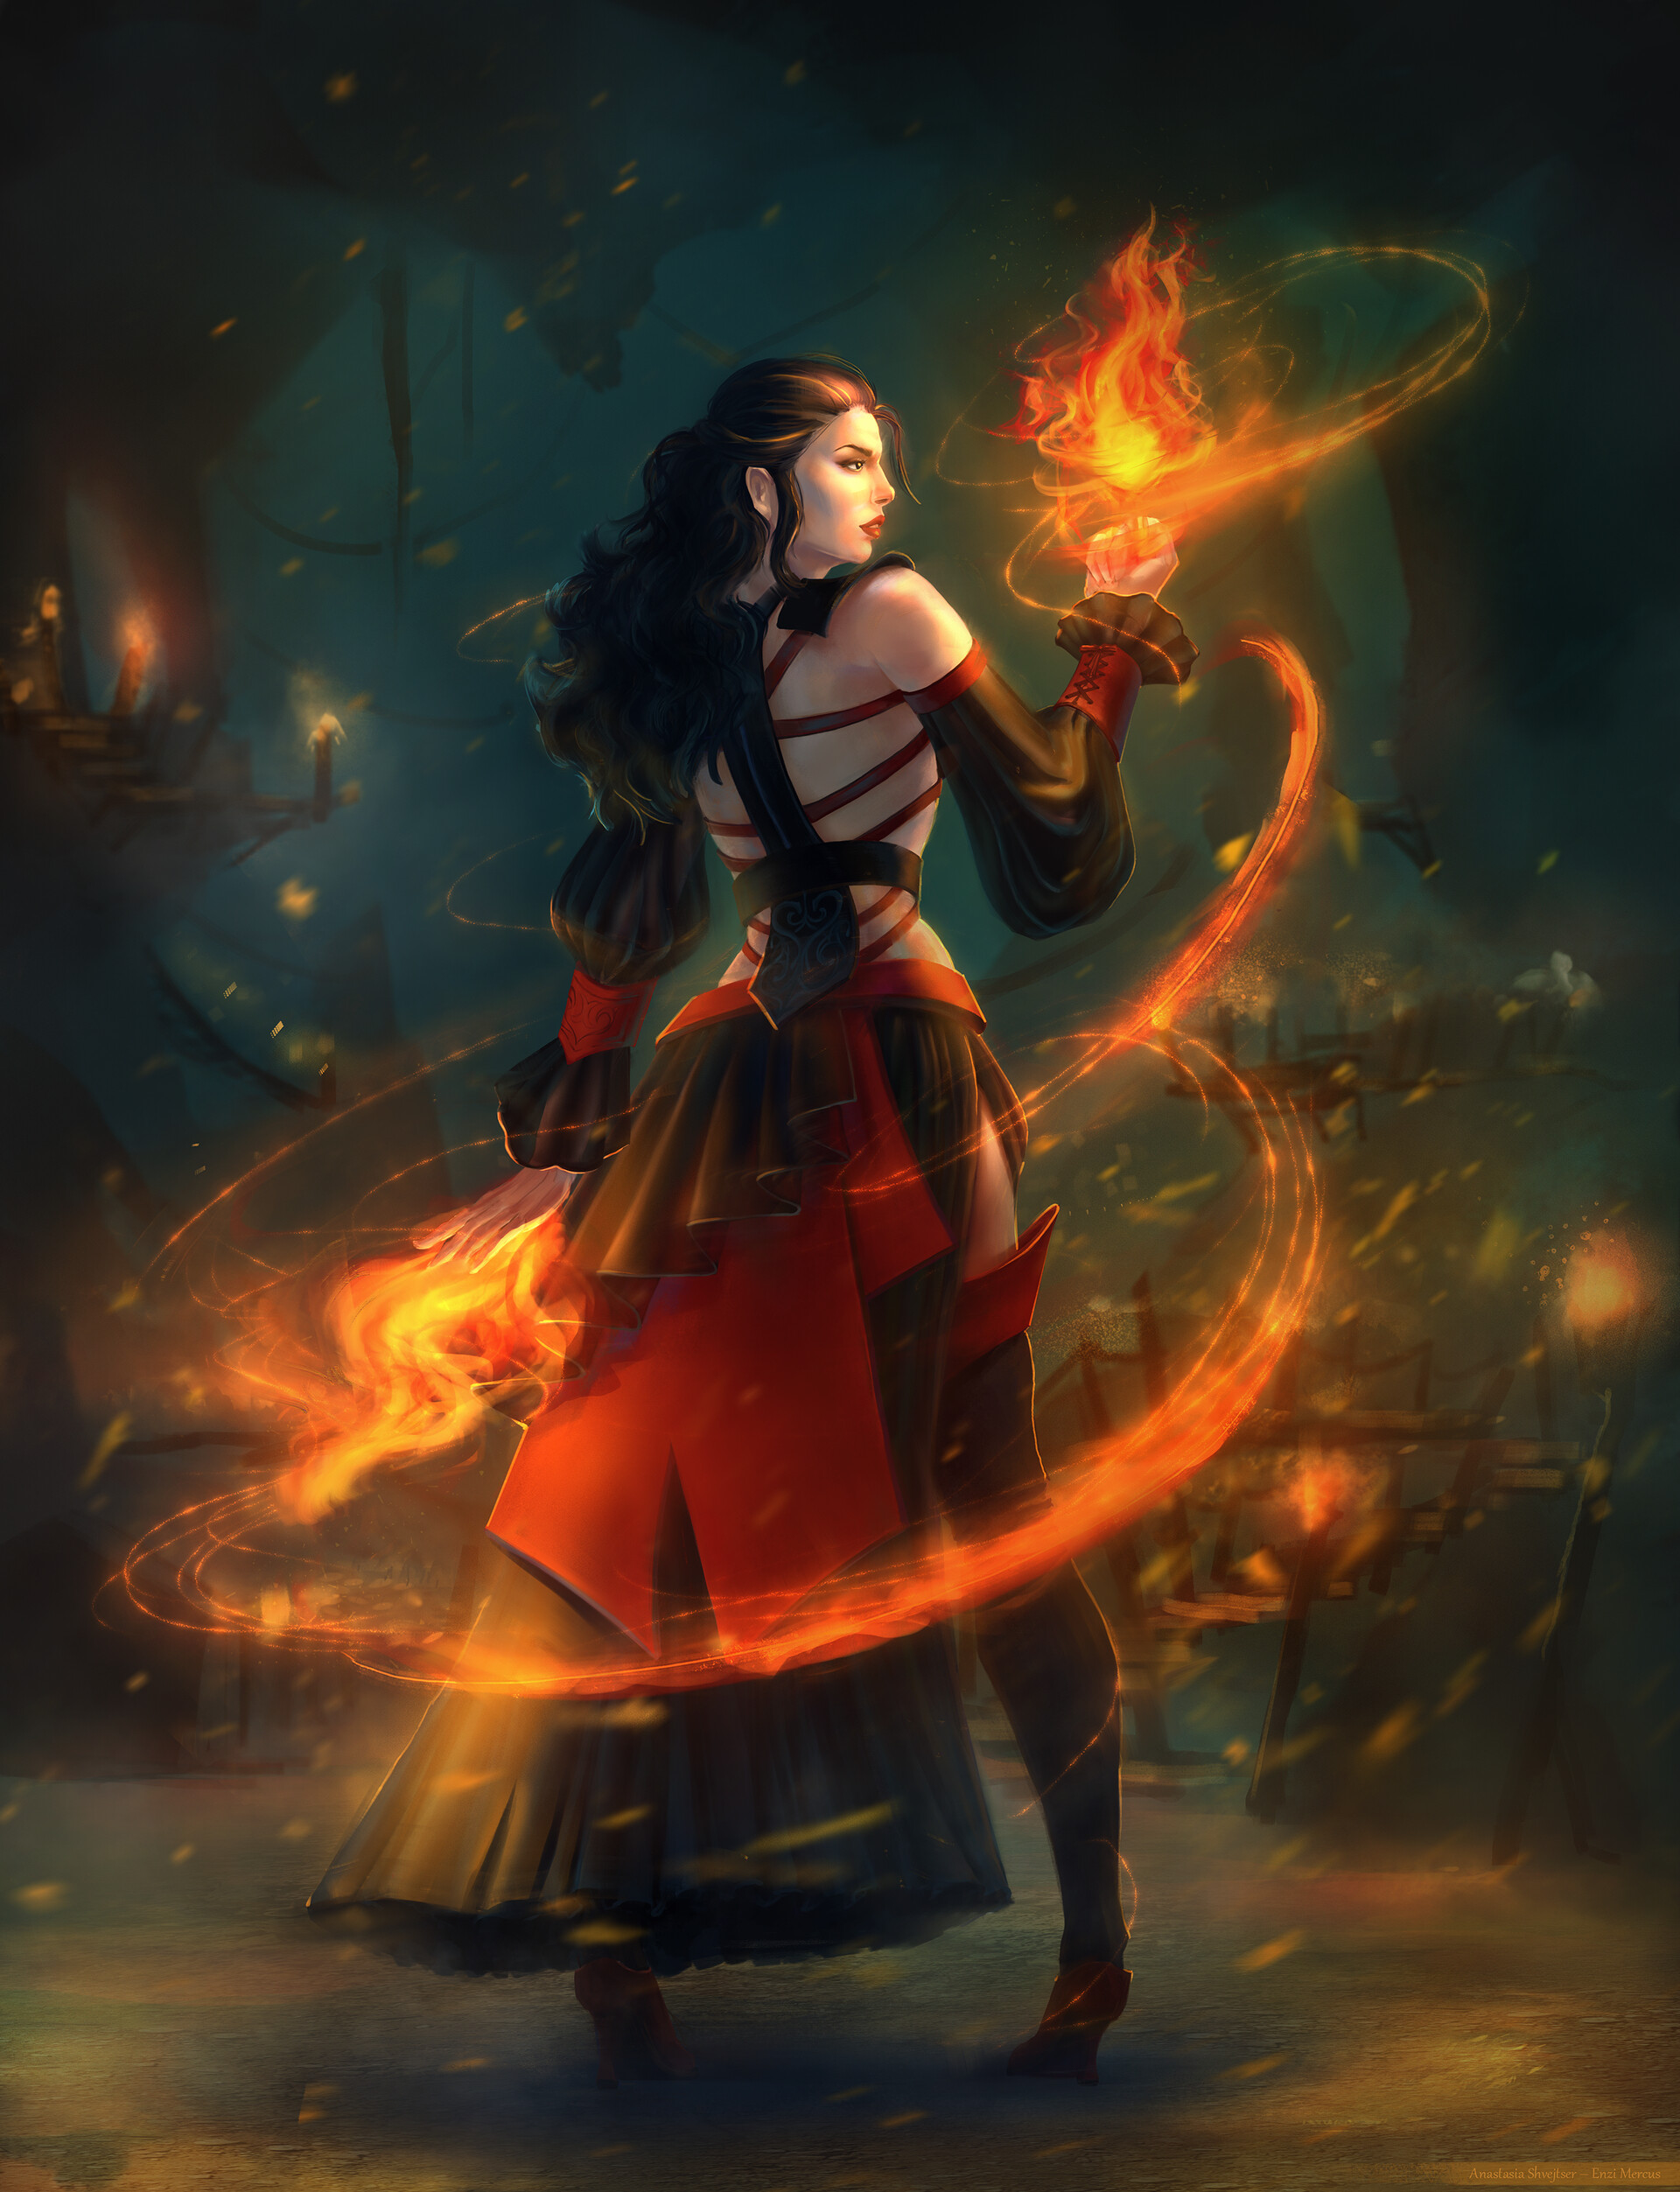 ArtStation - Fire sorceress